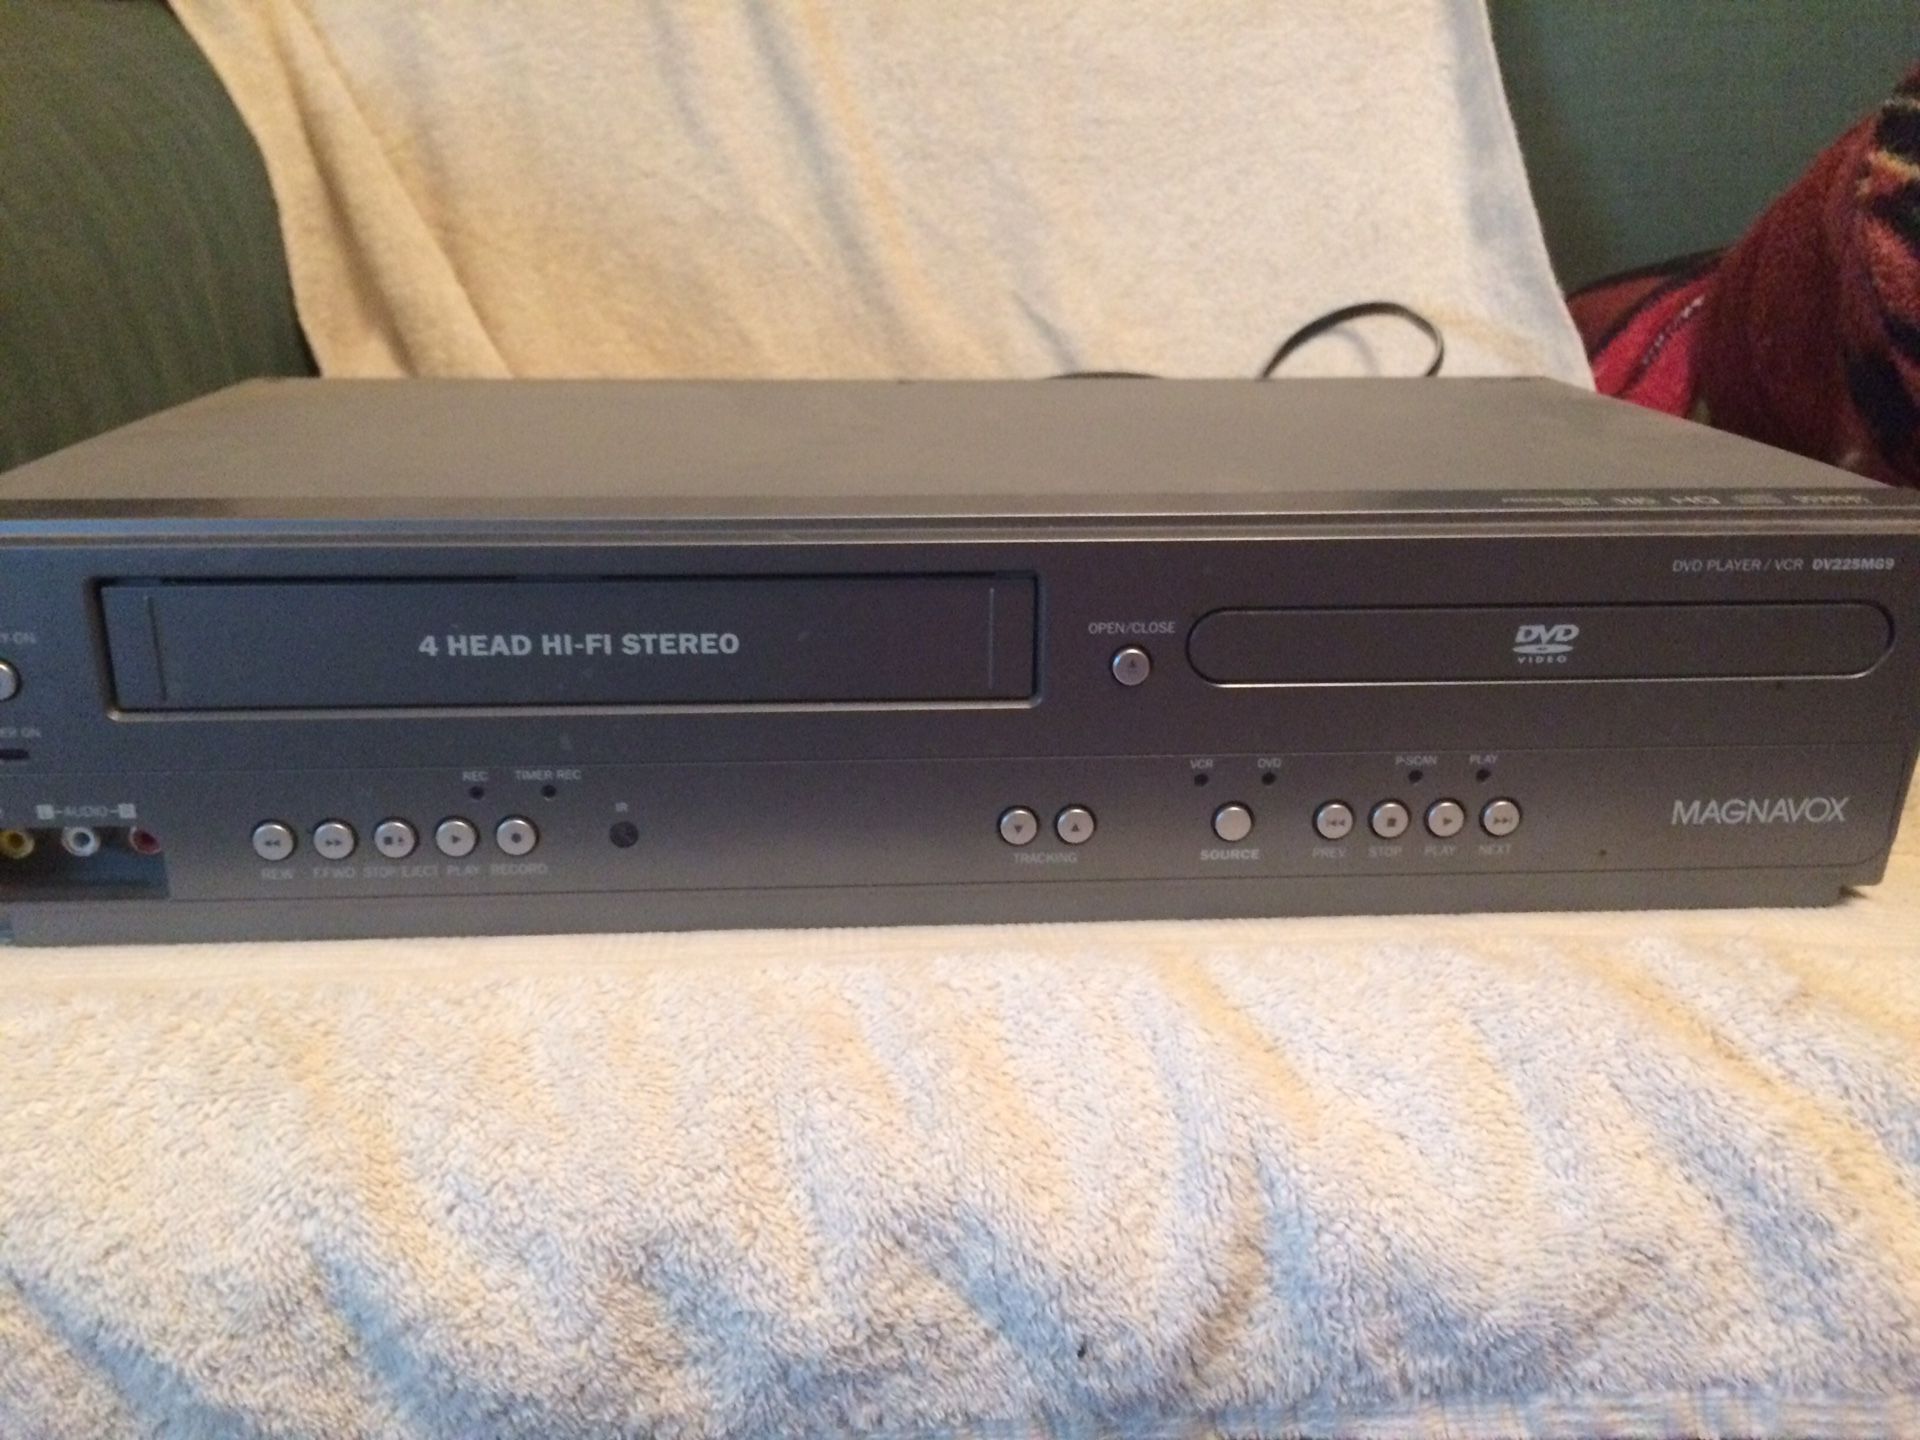 Magnavox DV225MG9 A DVD/VCR Player